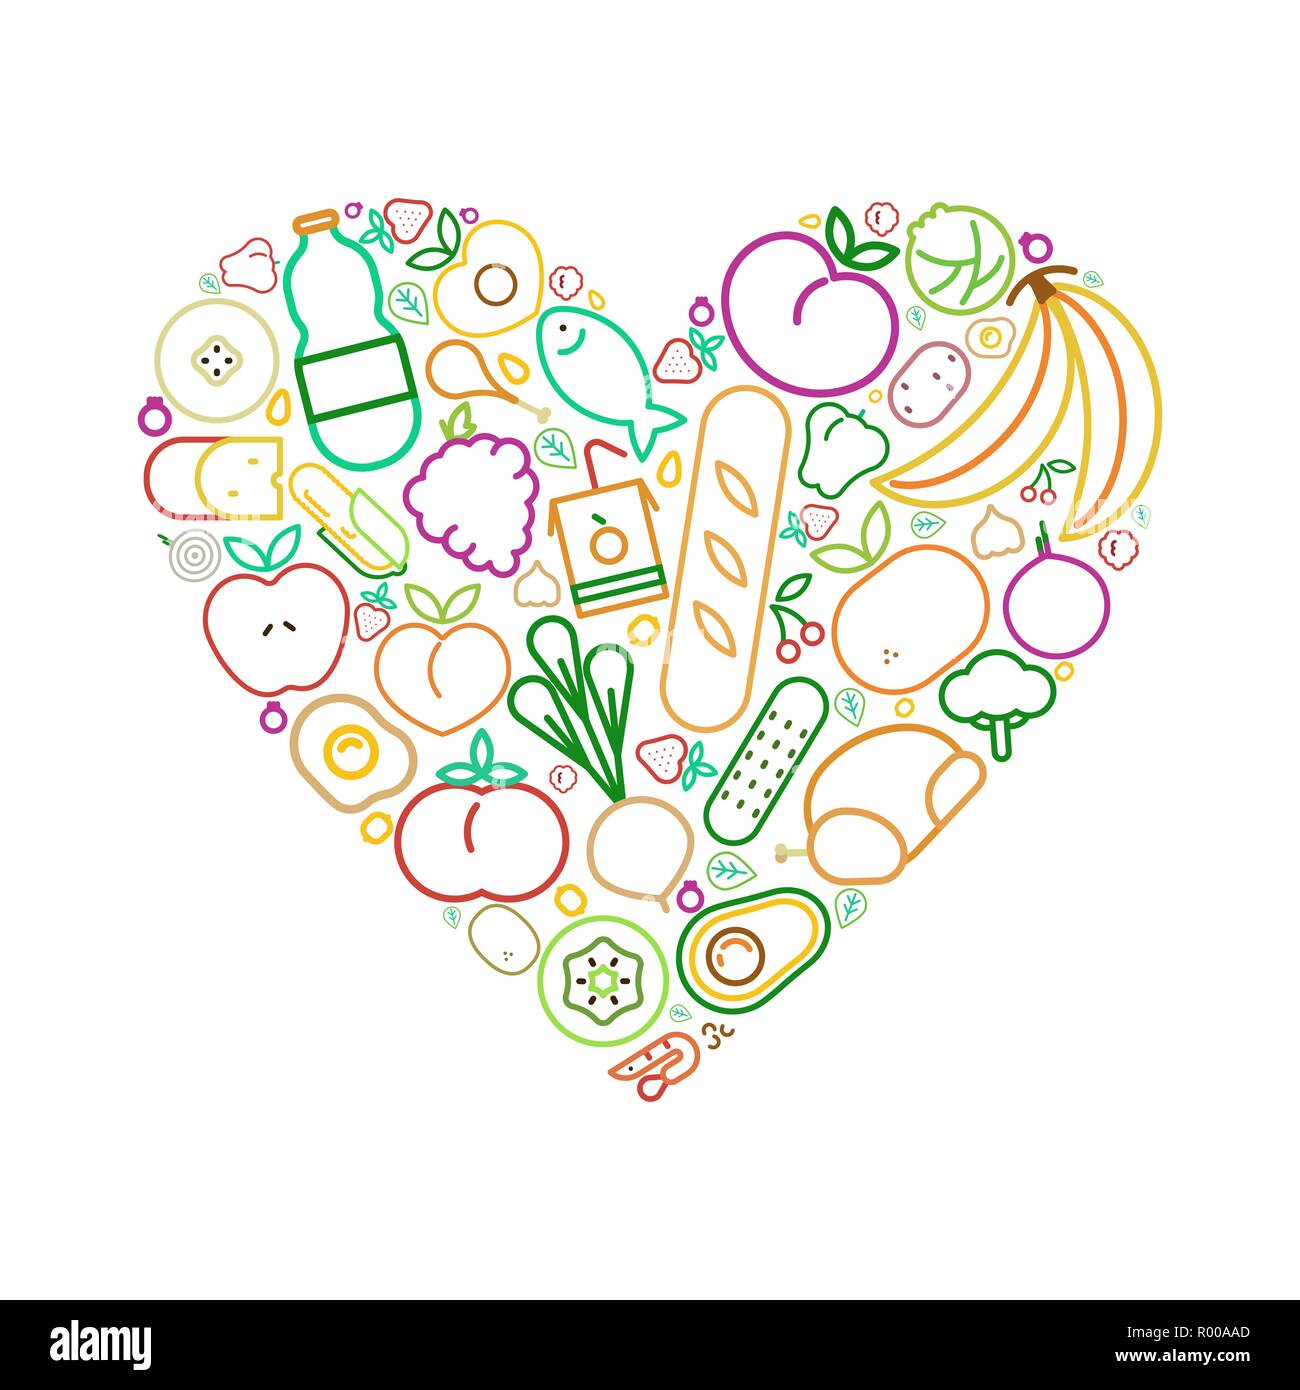 Herzform mit gesunder Ernährung essen Symbole Konzept für eine ausgewogene Ernährung. Enthält Obst, Gemüse, Fleisch, Brot und Milchprodukte. Stock Vektor